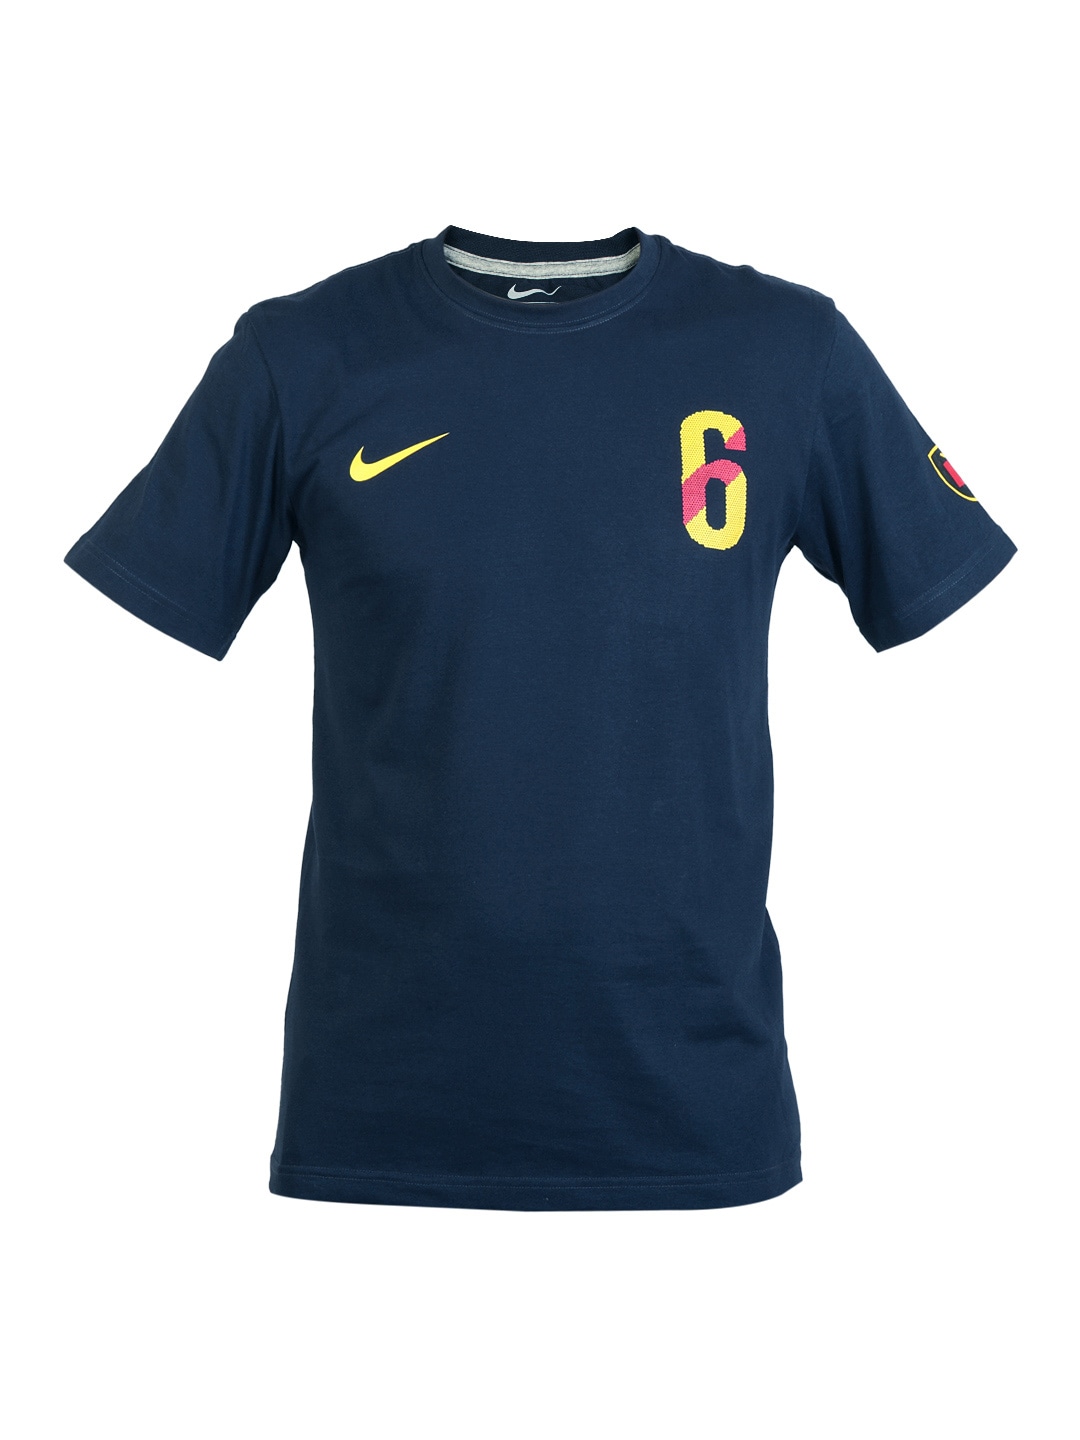 Nike Men Navy Blue Iniesta Football T-shirt